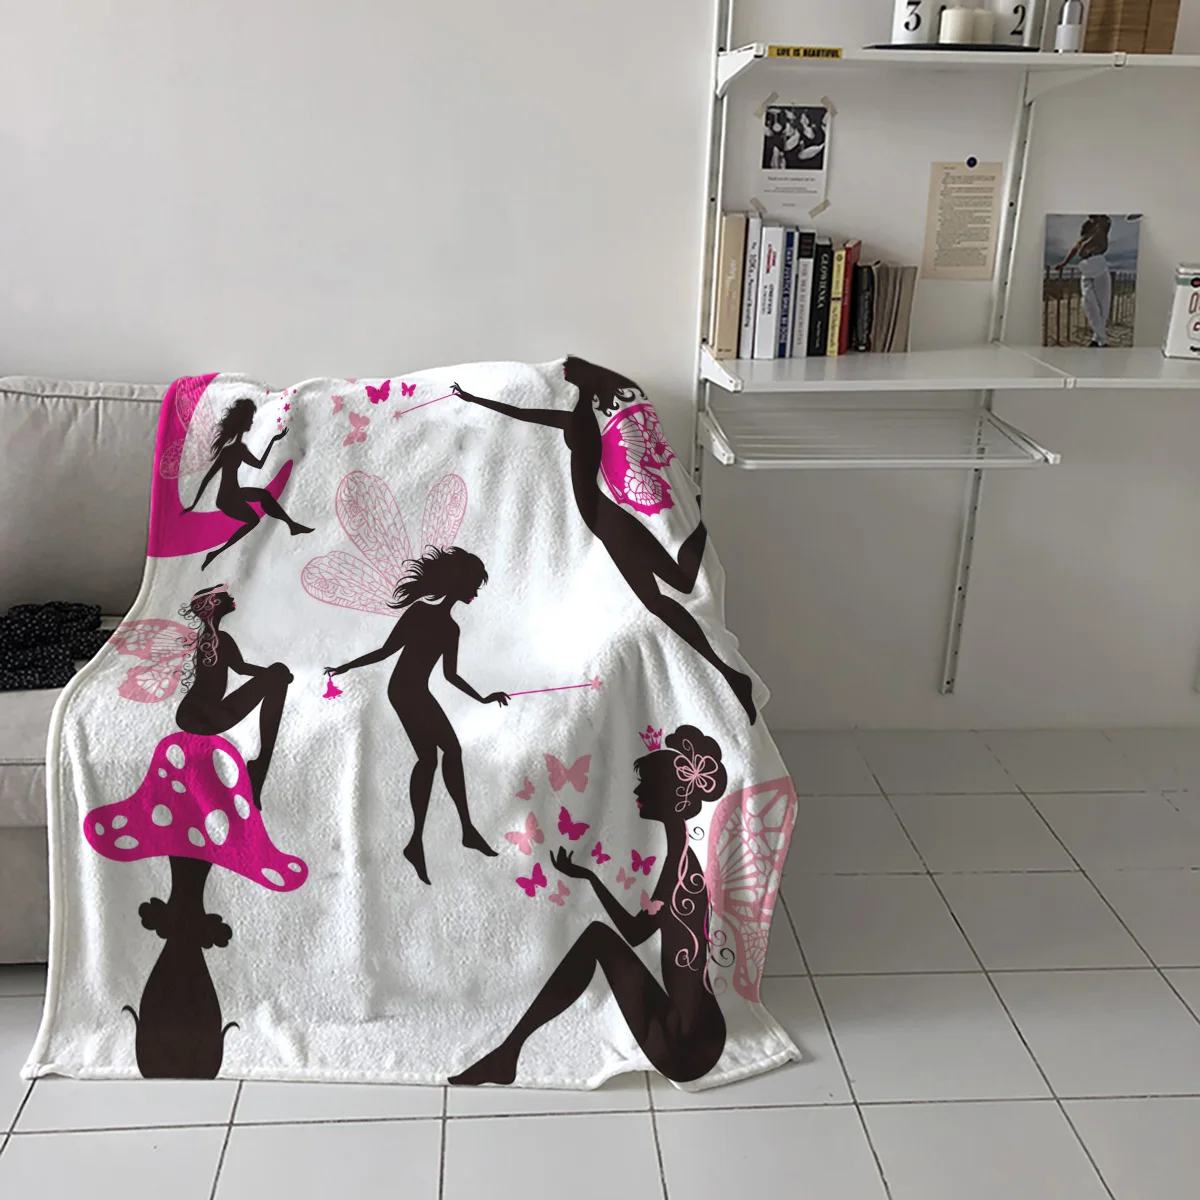 

Домашние мягкие одеяла с крыльями феи и бабочками искусство для взрослых детей для спальни кровати дивана пледы одеяла для офиса теплое оде...